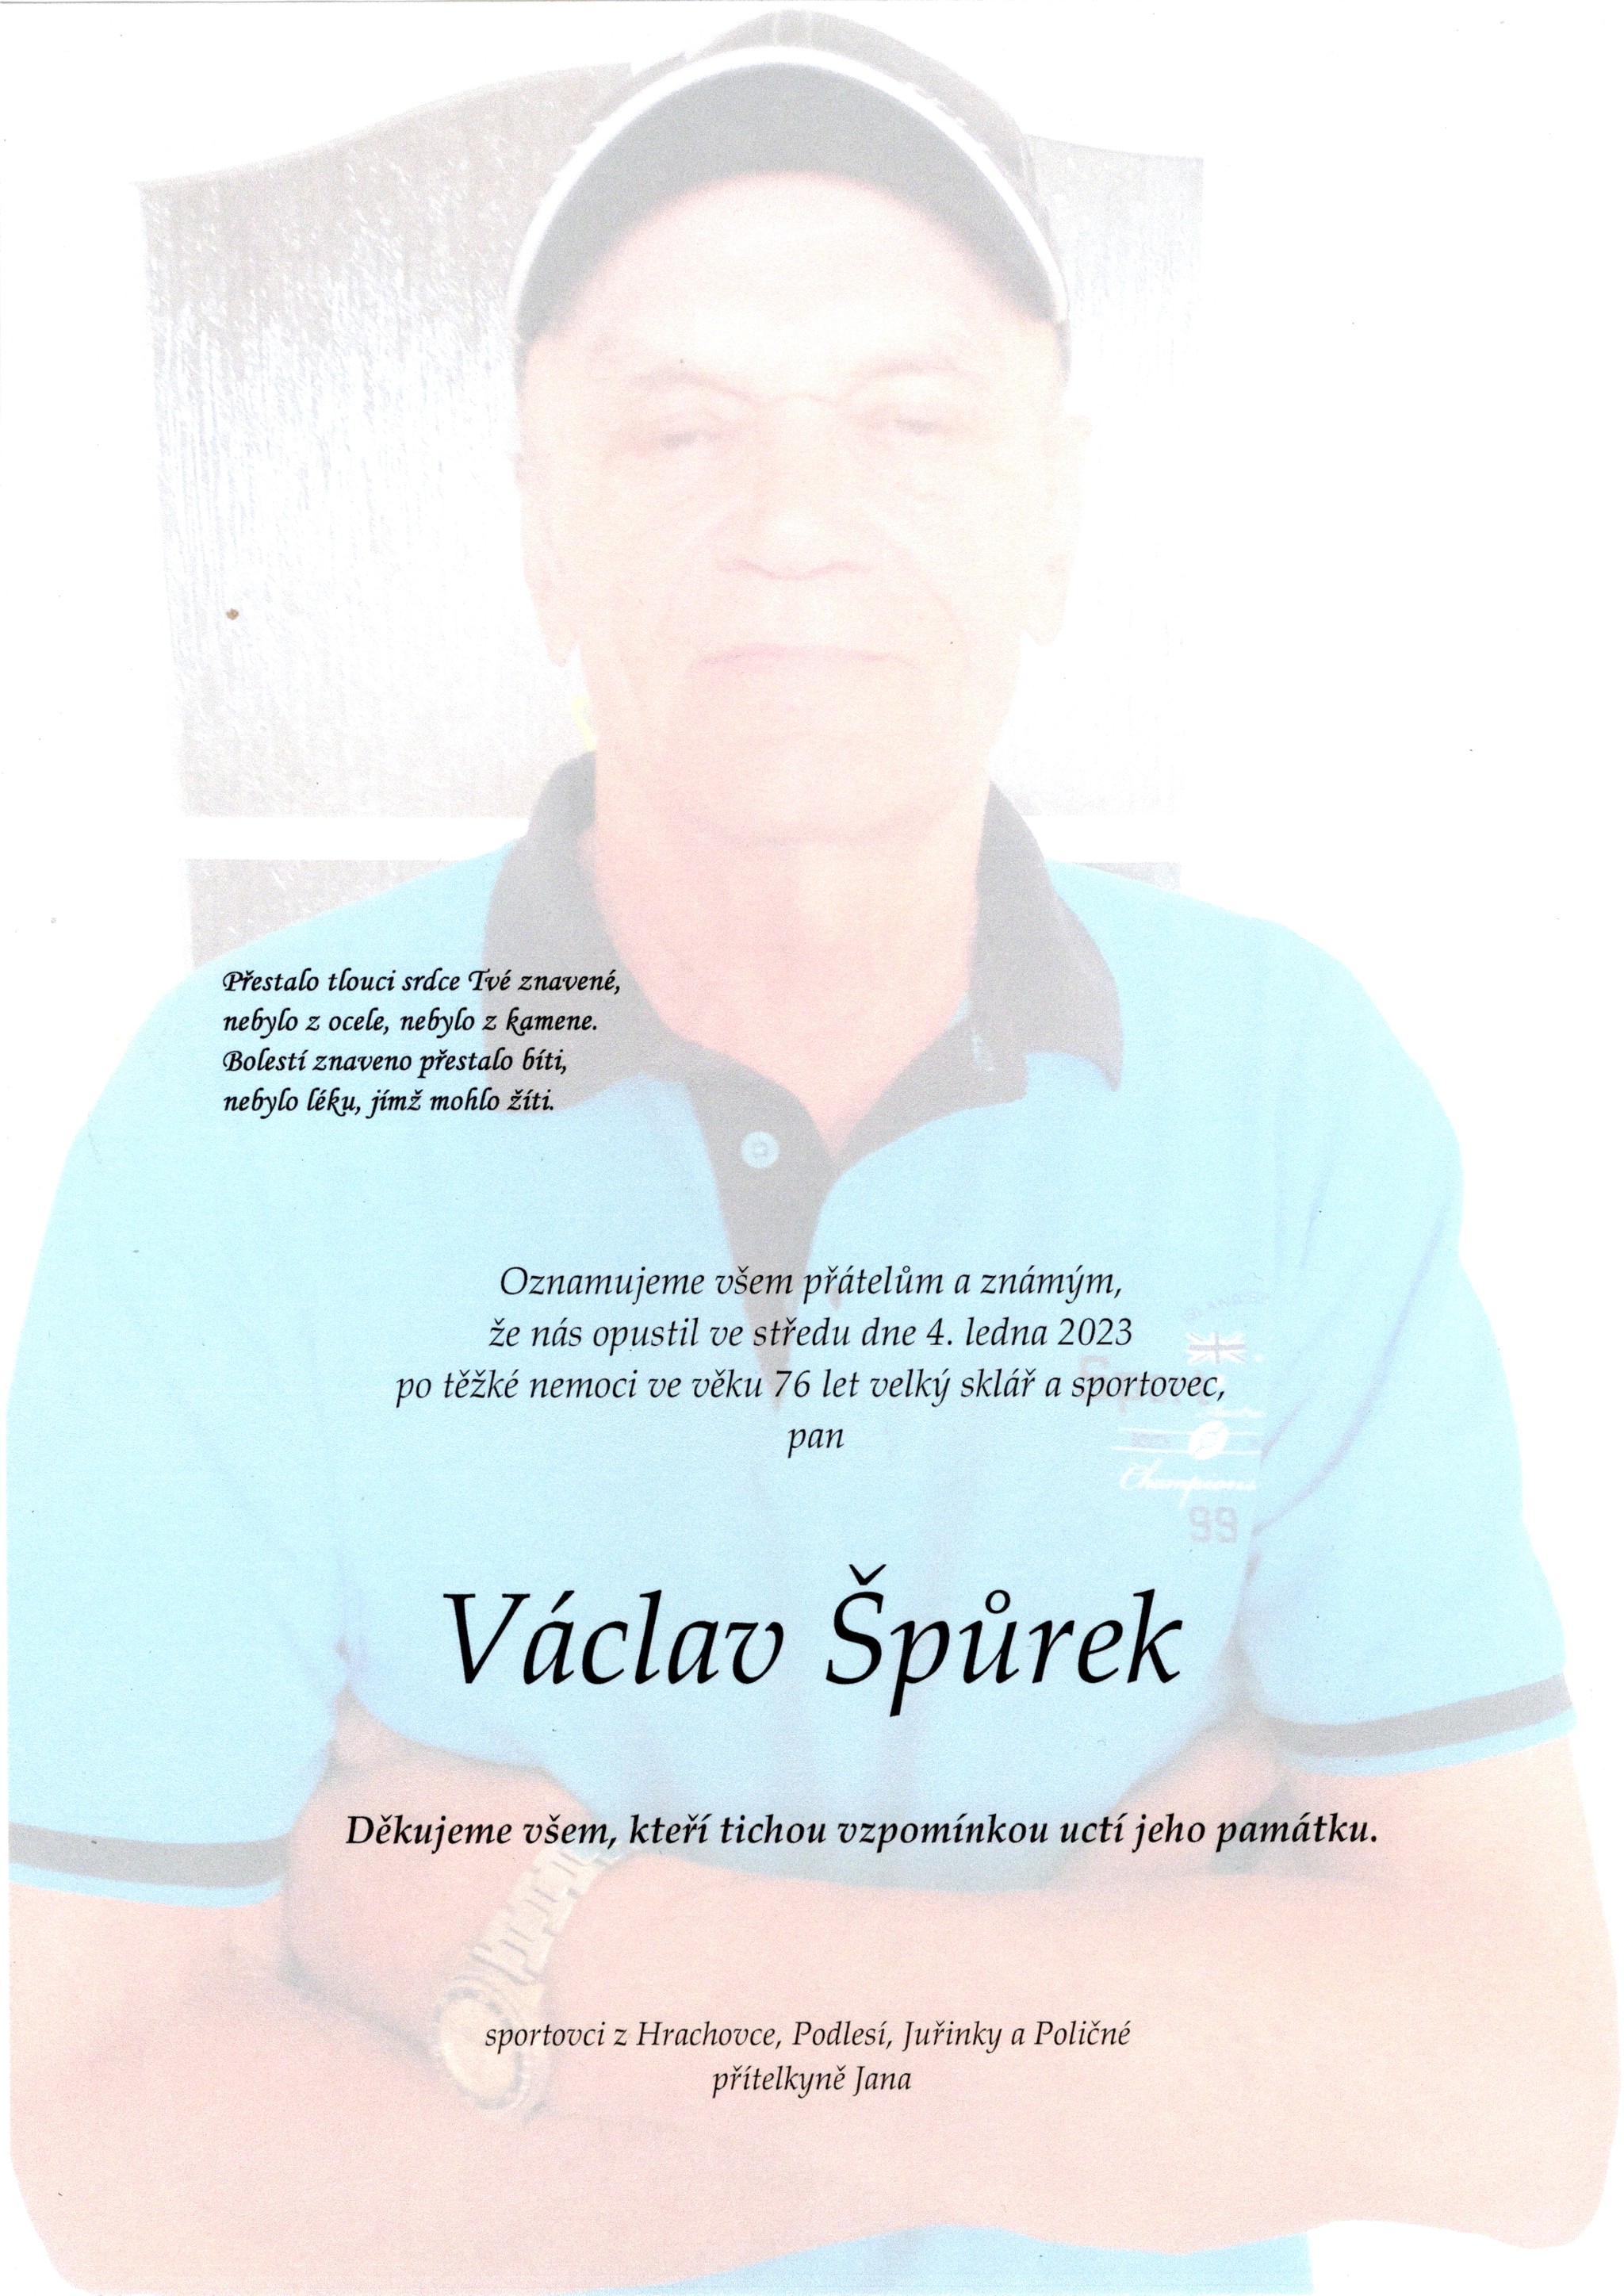 Václav Špůrek